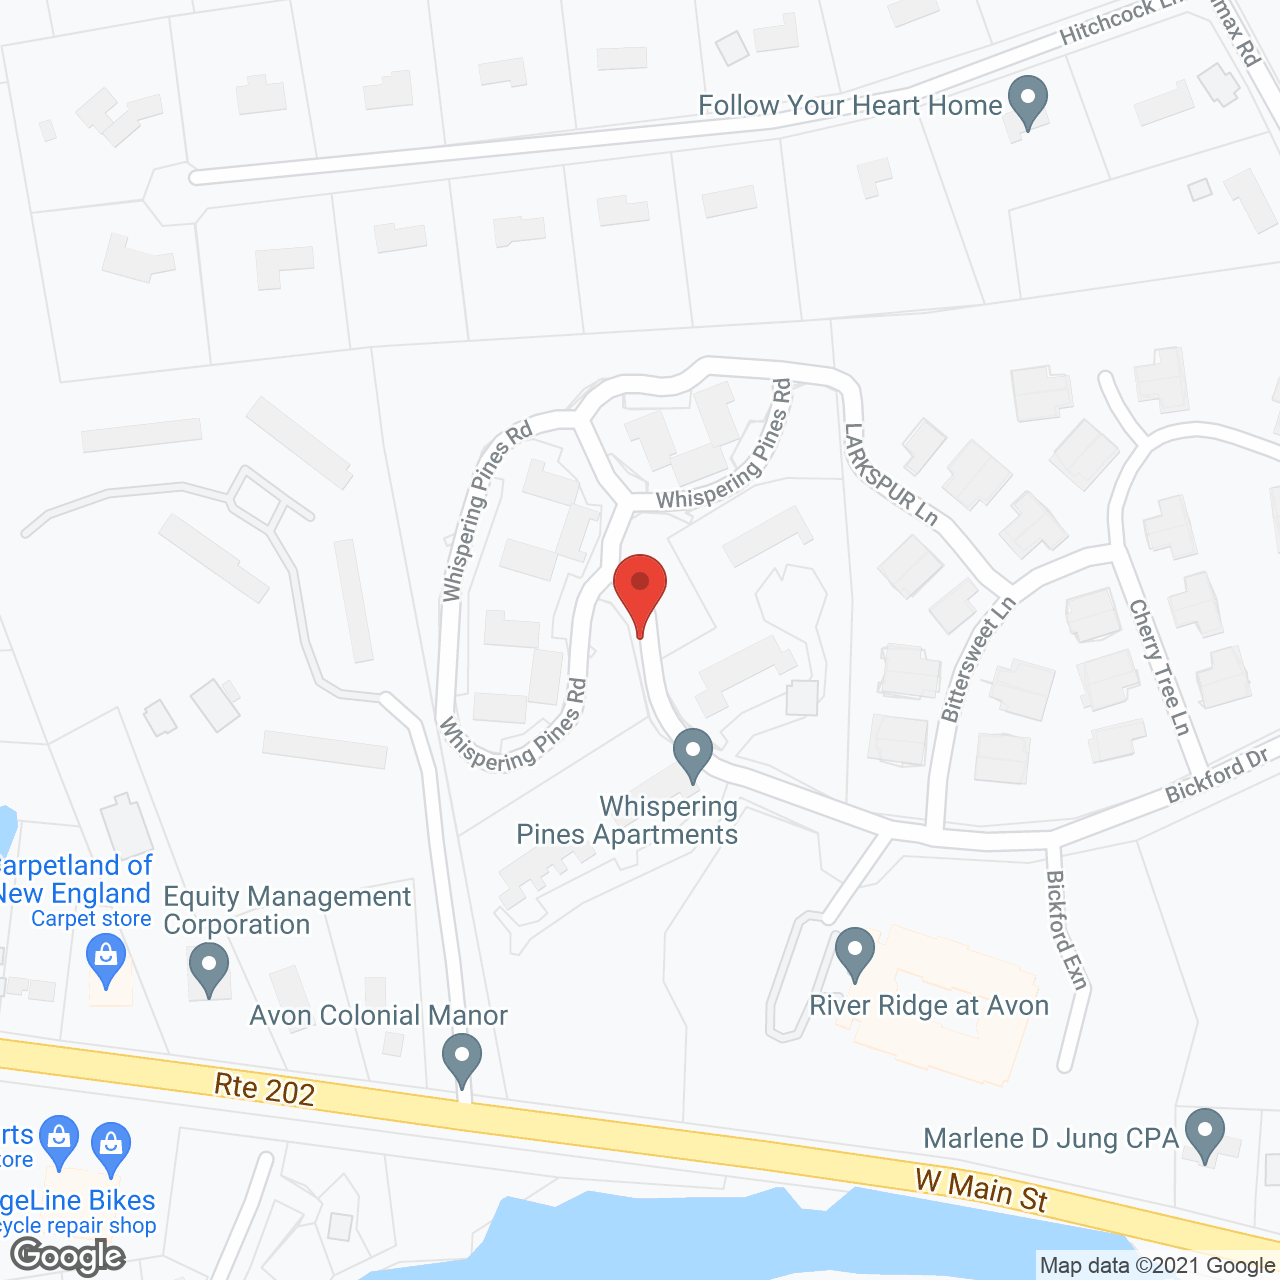 River Ridge at Avon in google map